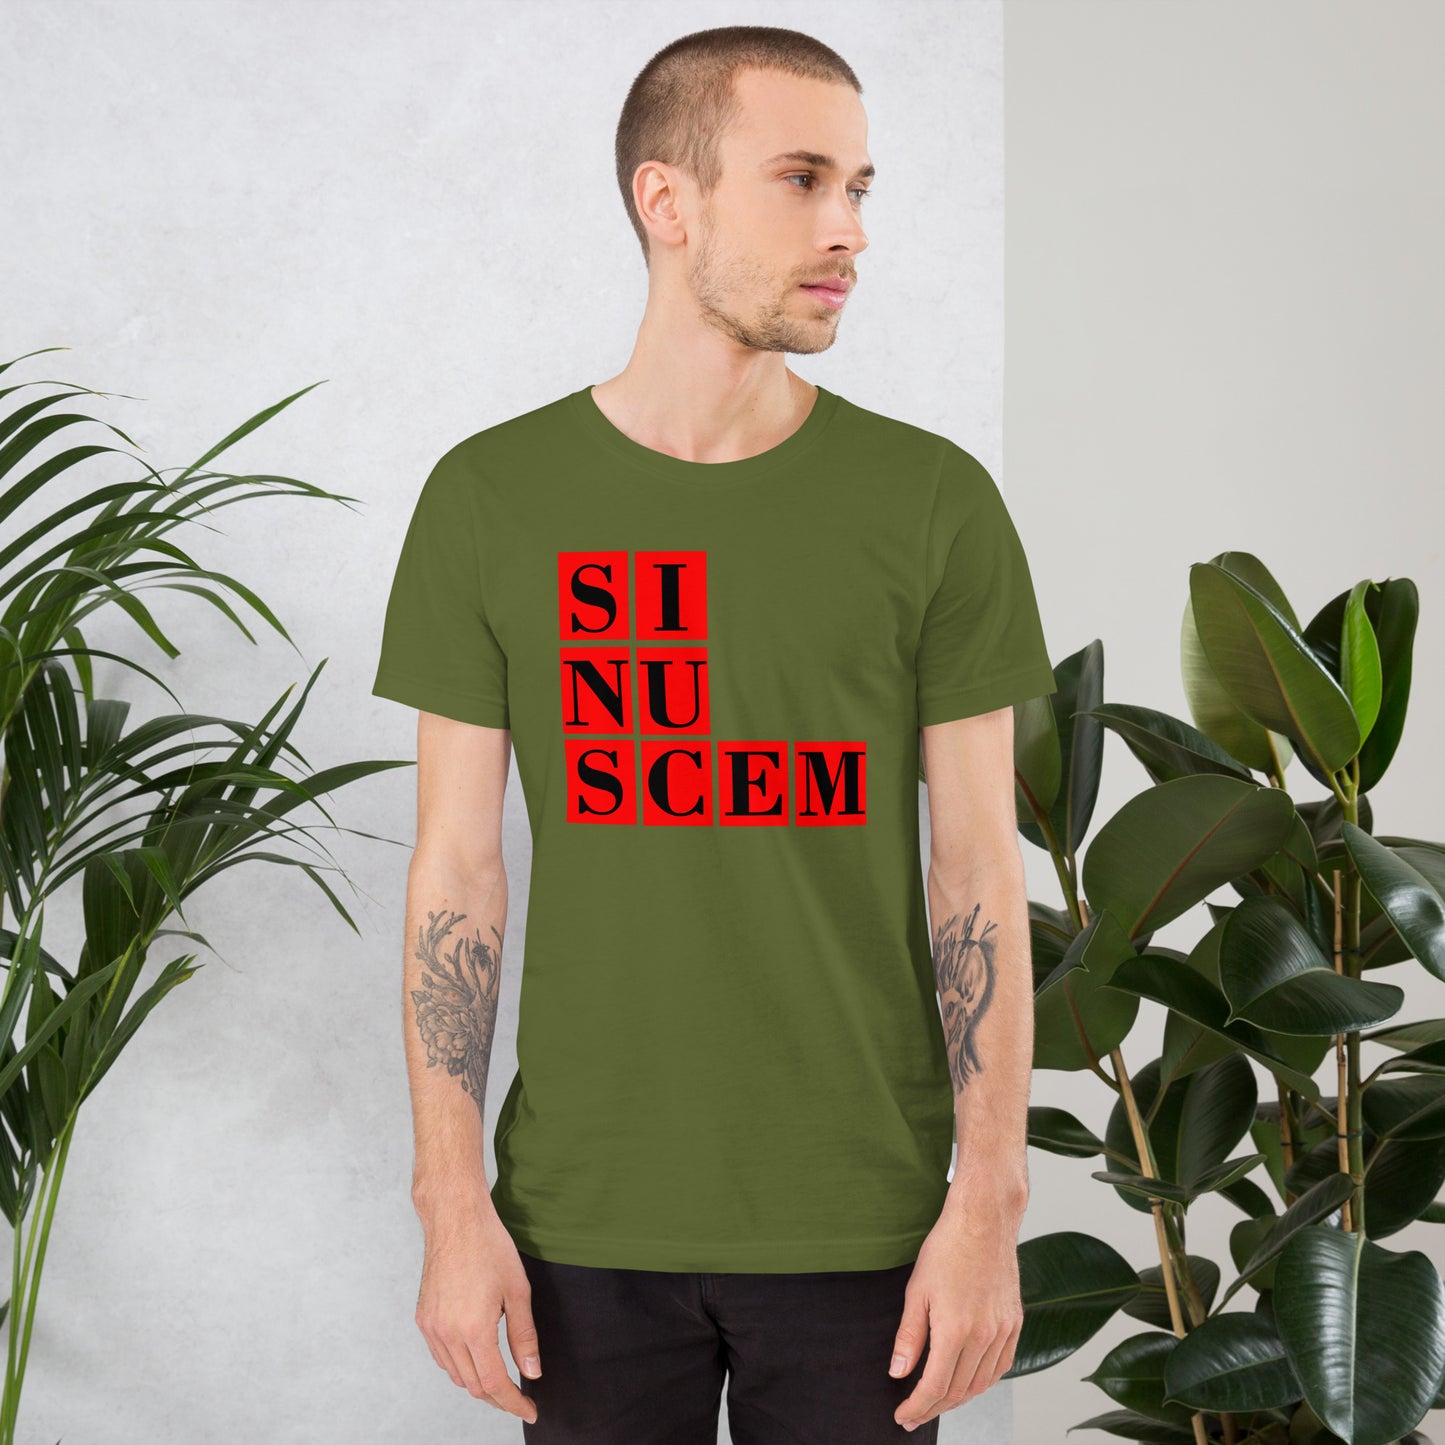 Unisex-T-Shirt SNSCM